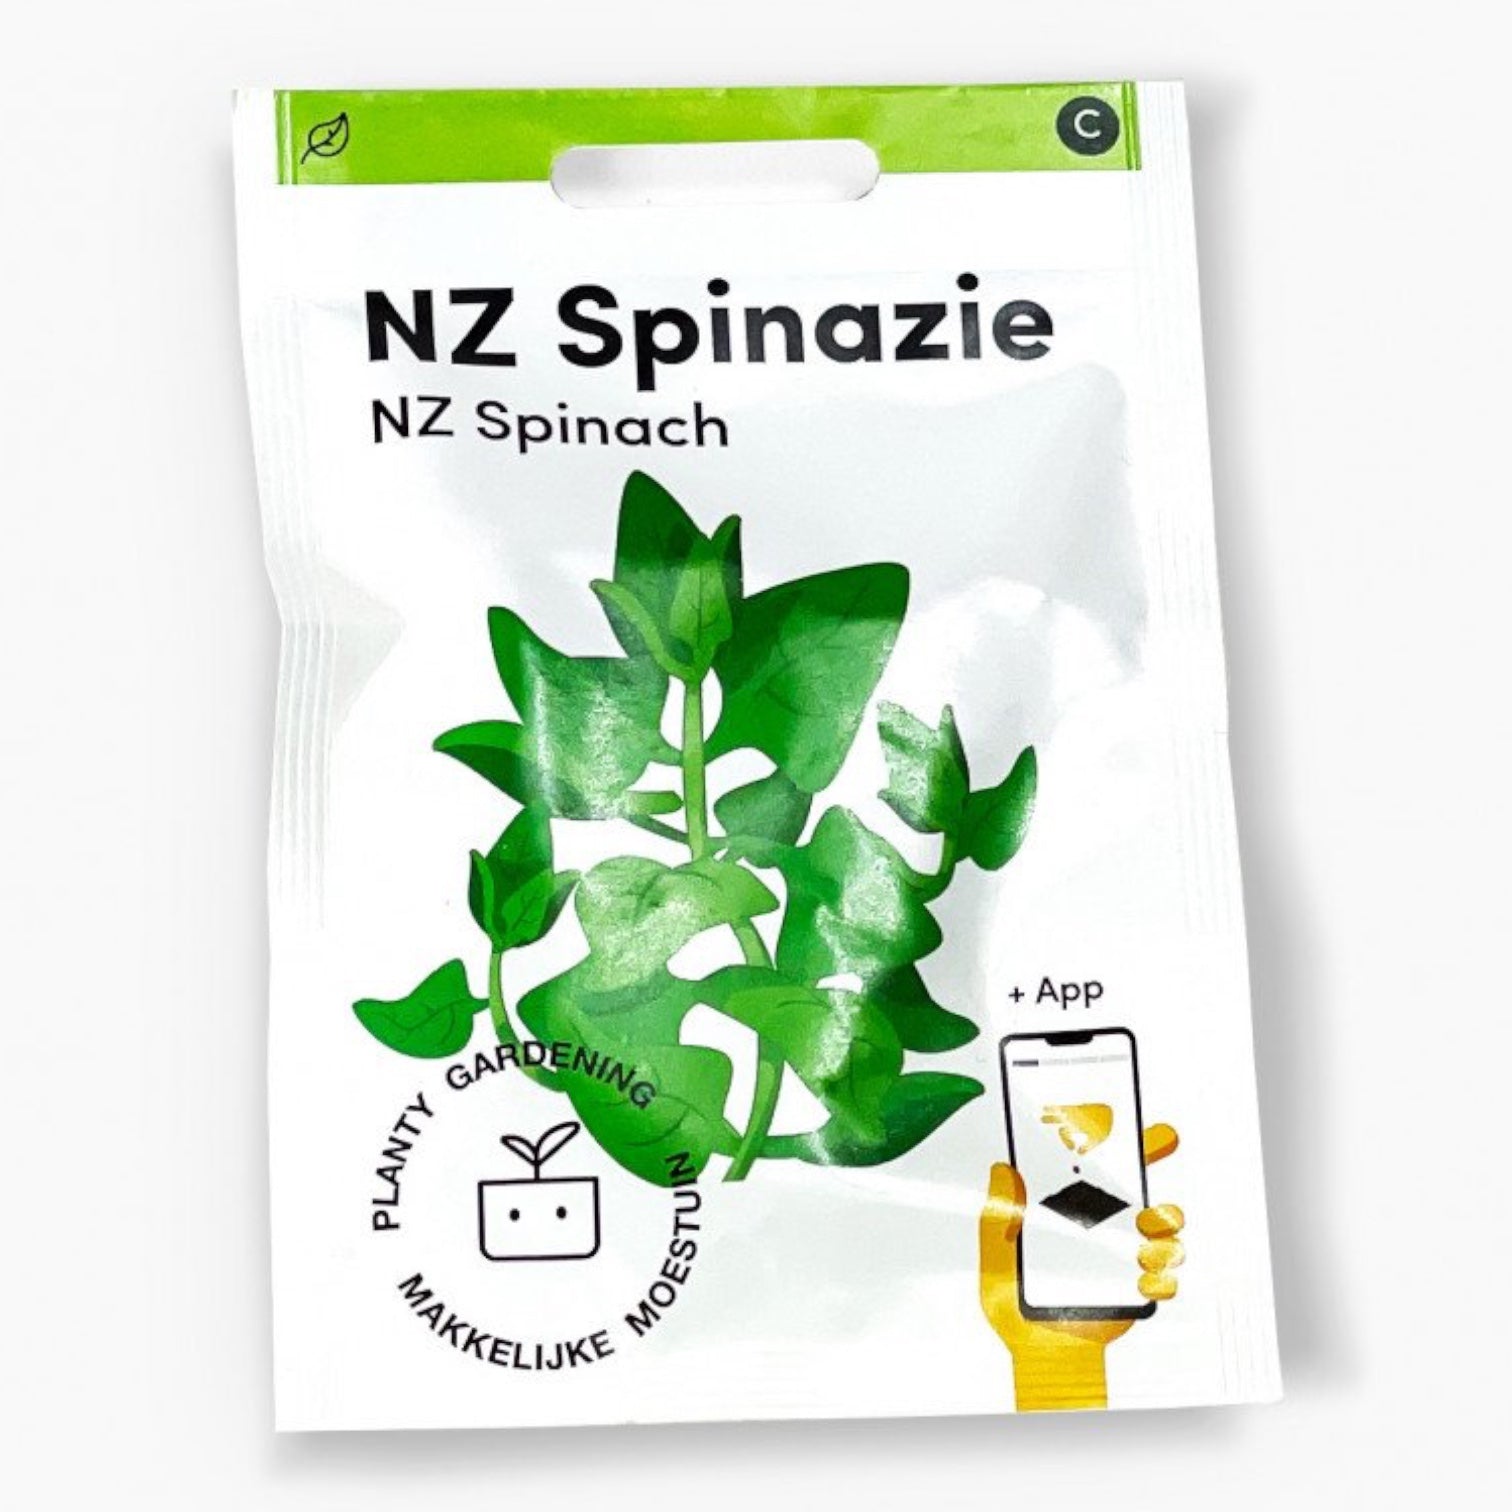 NZ Spinazie - Parrot and Bird Supplies